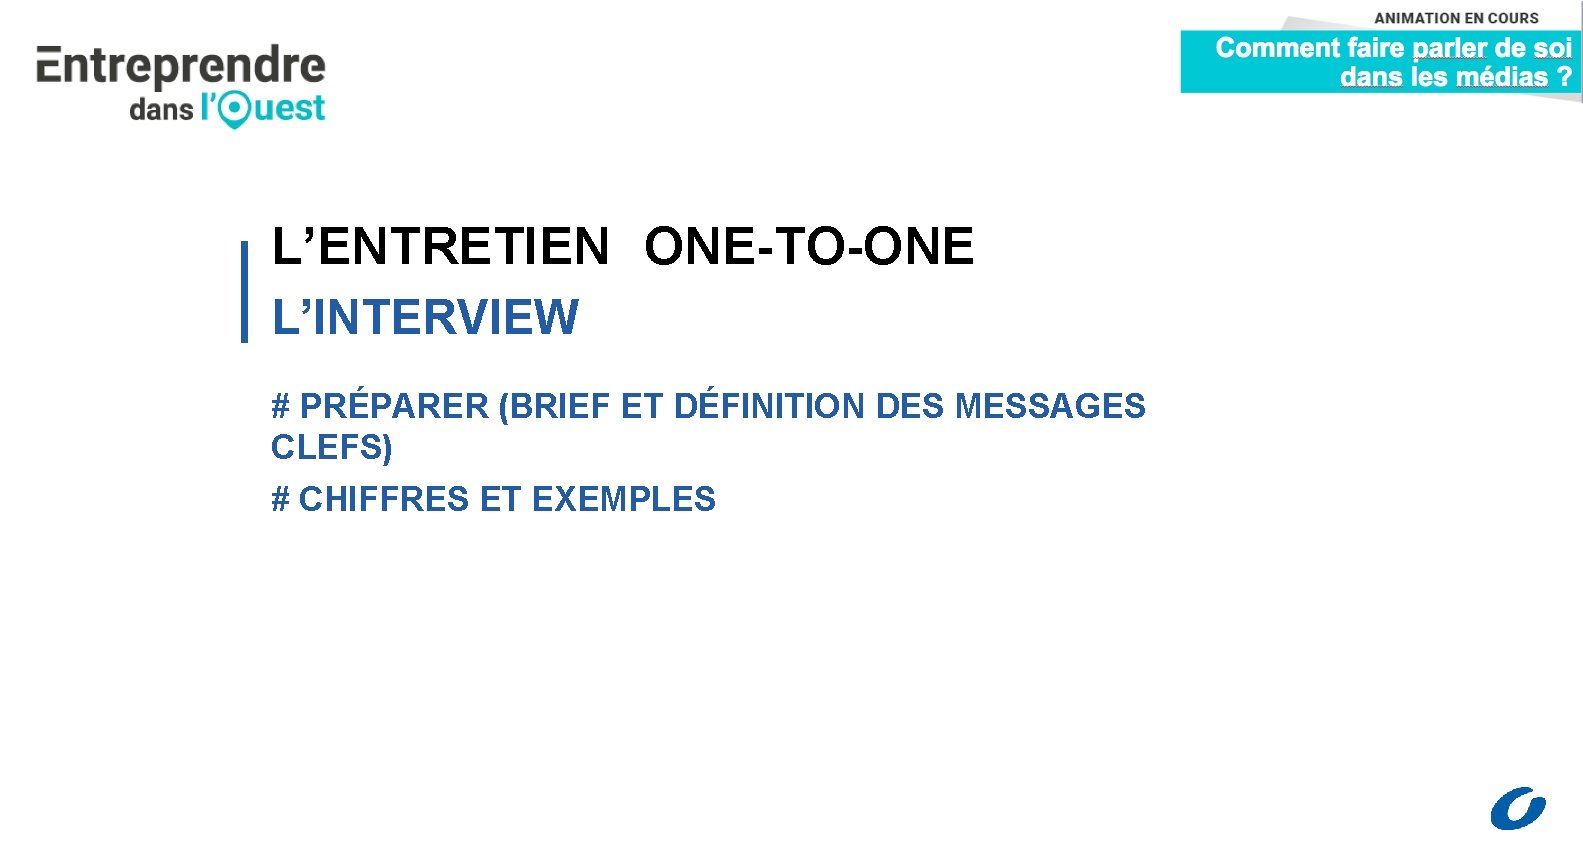 L’ENTRETIEN ONE-TO-ONE L’INTERVIEW # PRÉPARER (BRIEF ET DÉFINITION DES MESSAGES CLEFS) # CHIFFRES ET